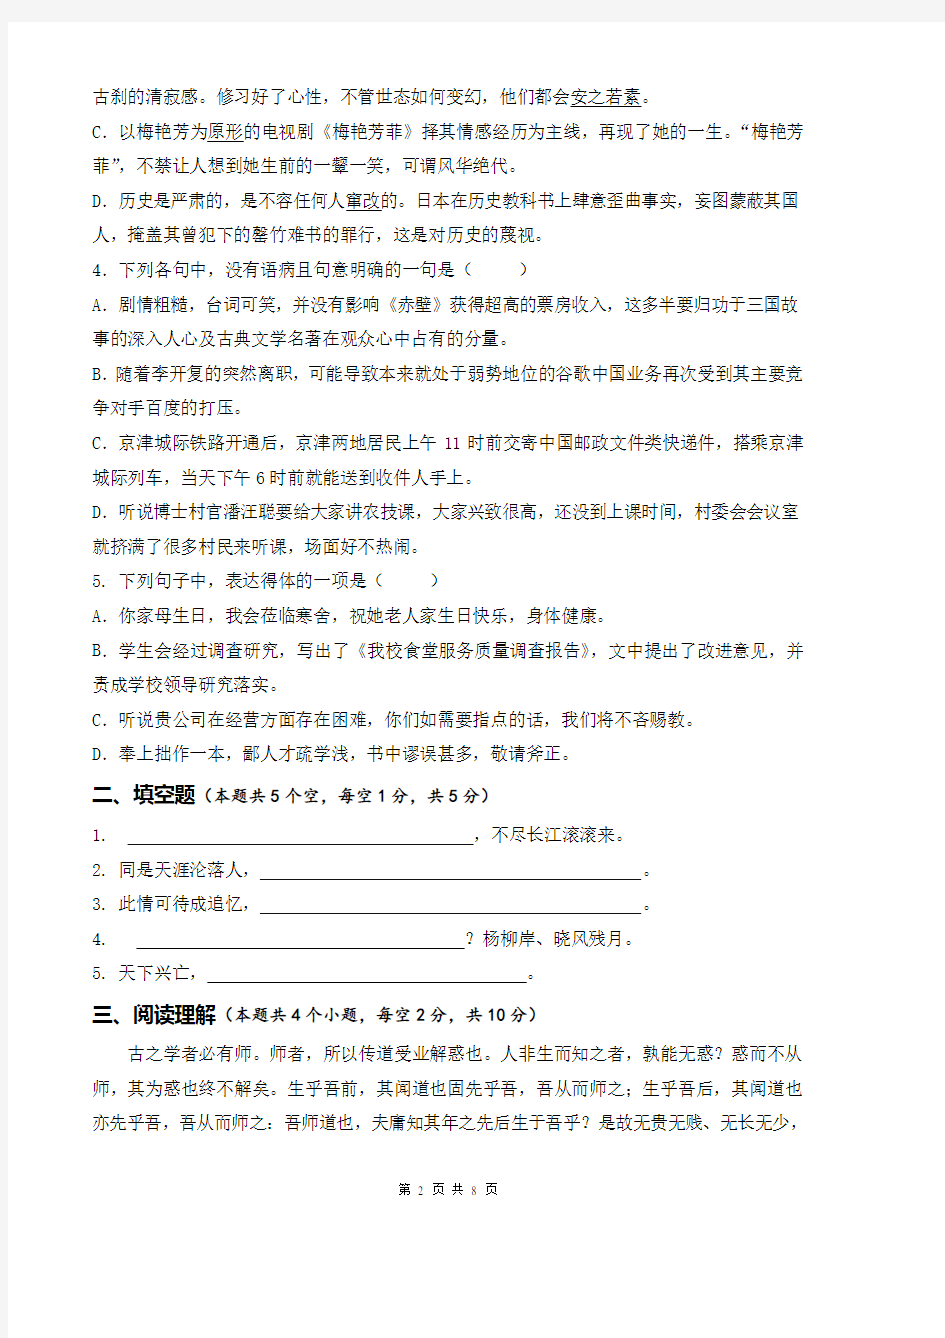 青岛港湾职业技术学院2013年单独招生考试试题册